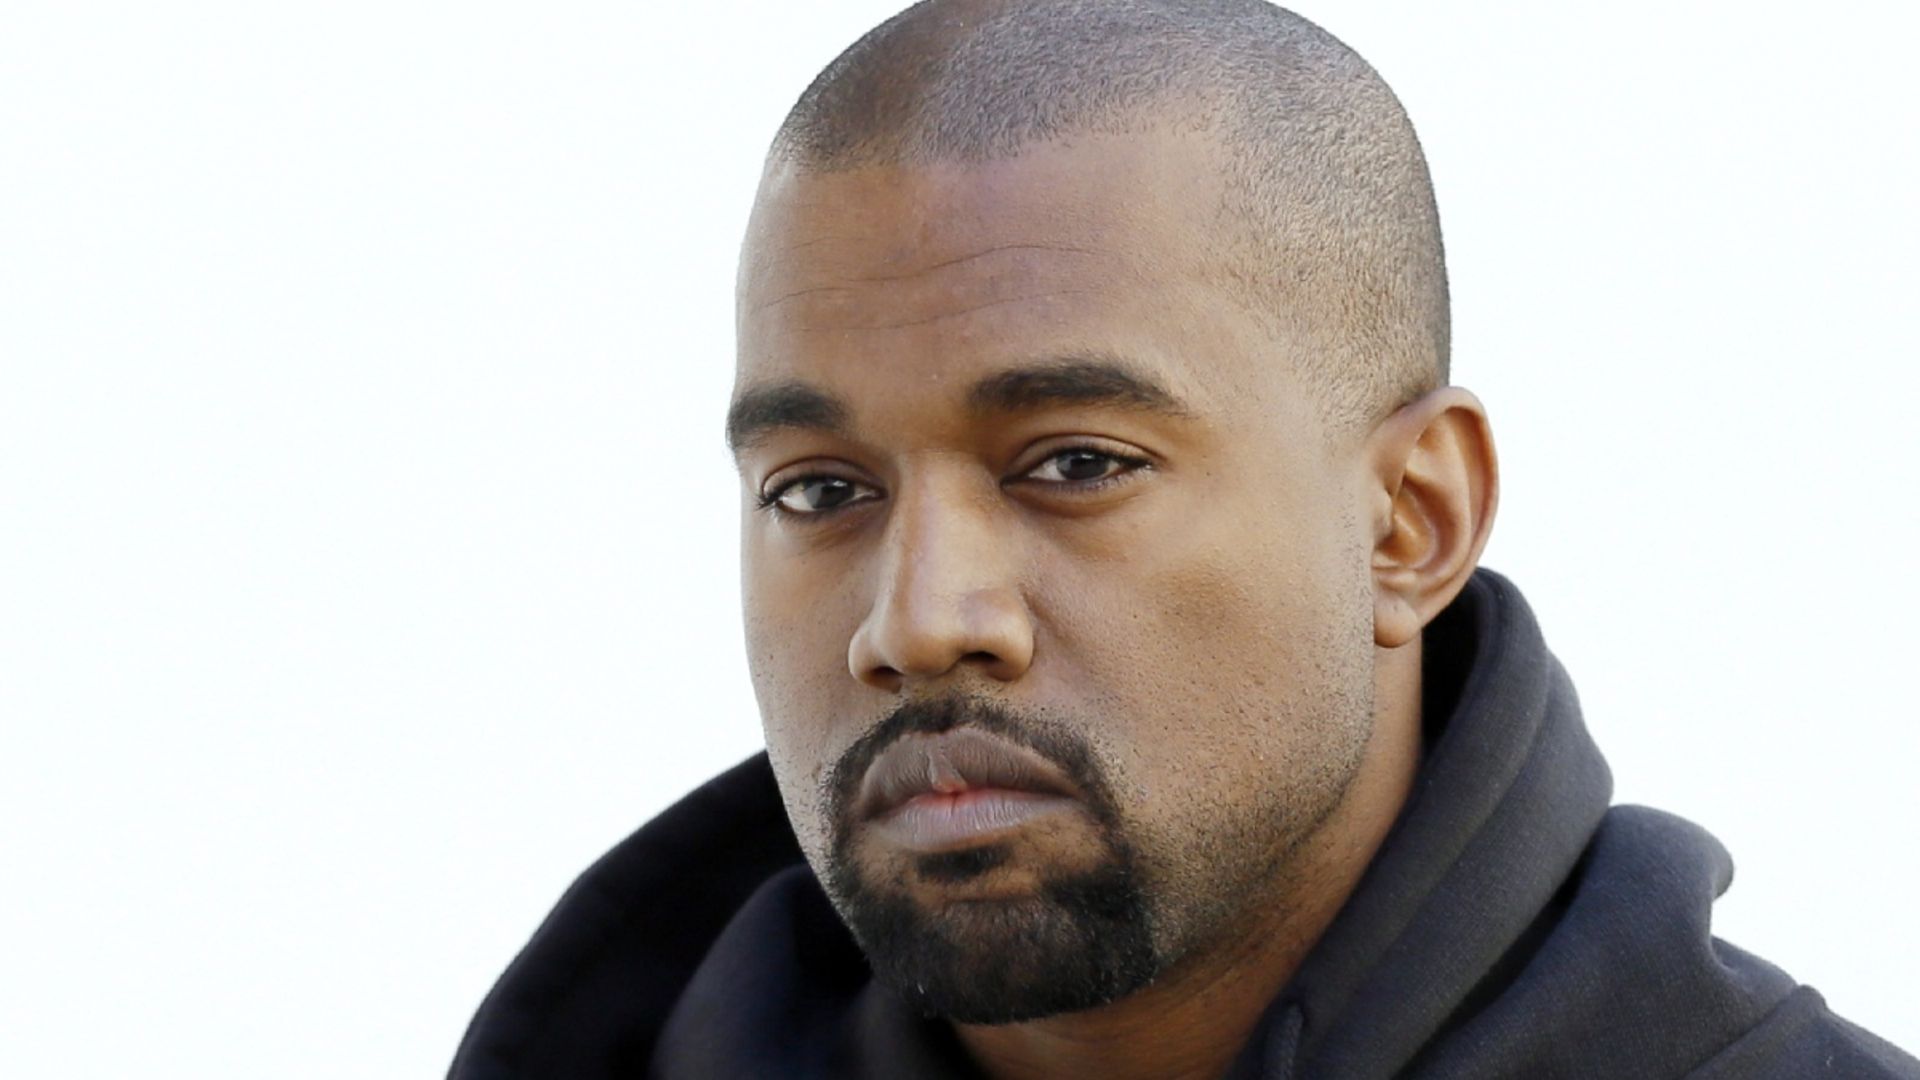 Kanye West drops new single about Kim Kardashian and Pete Davidson's romance